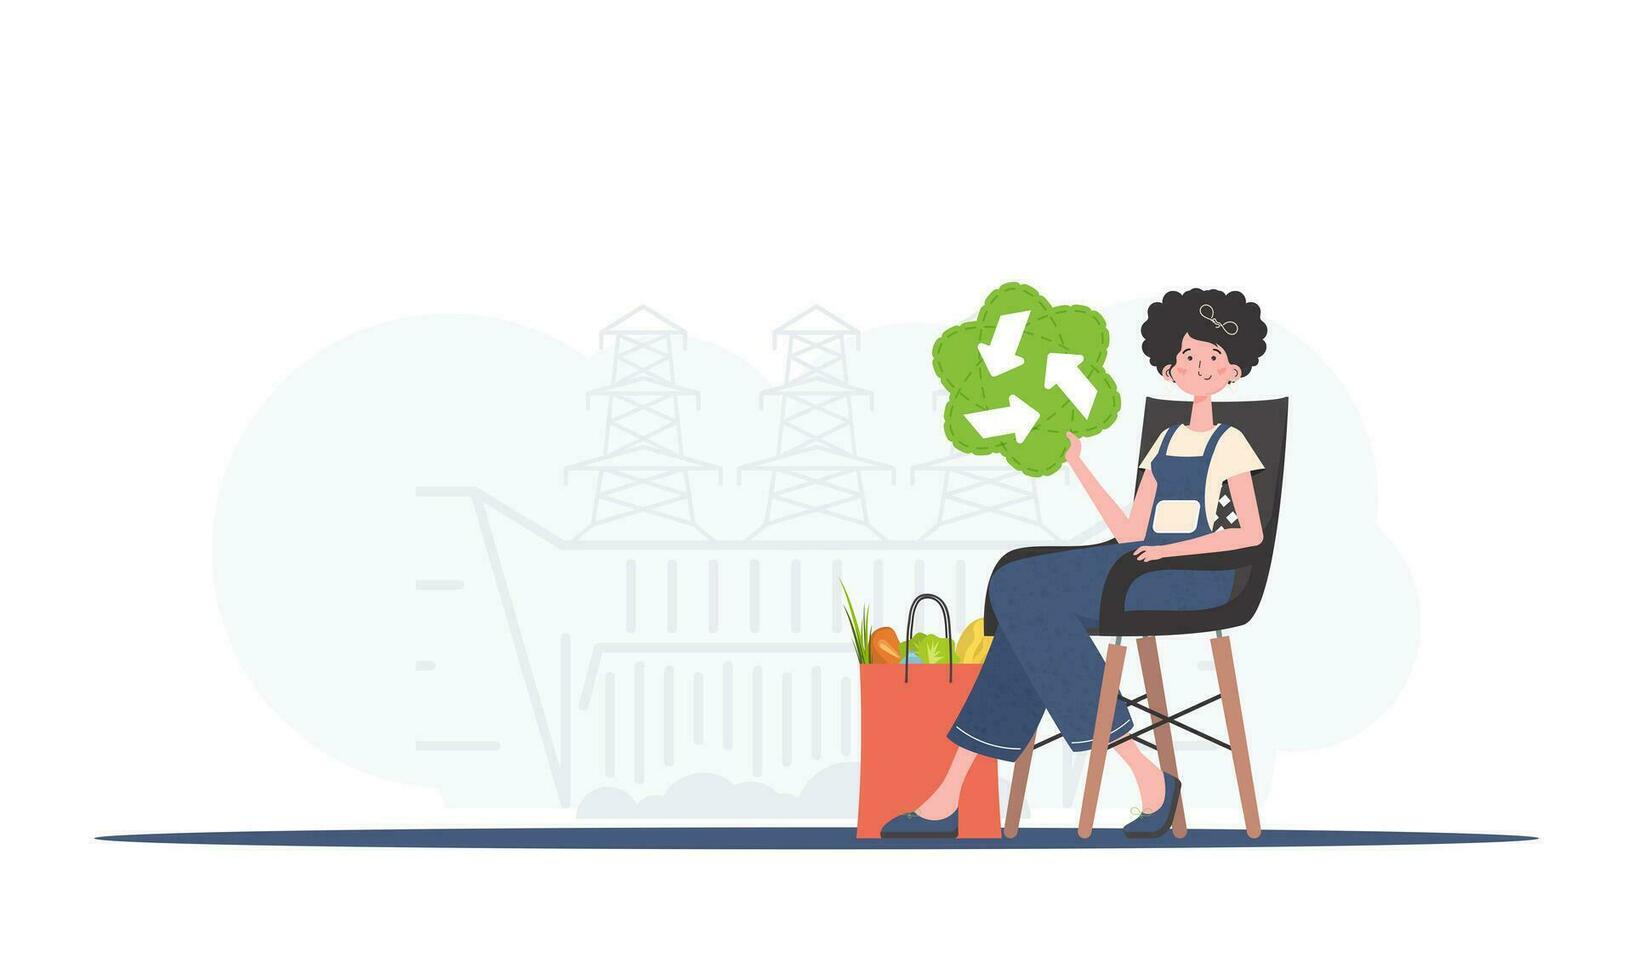 el niña es sentado siguiente a un paquete con sano comida y participación un eko icono. el concepto de ecología, cero residuos y sano comiendo. tendencia estilo, vector ilustración.